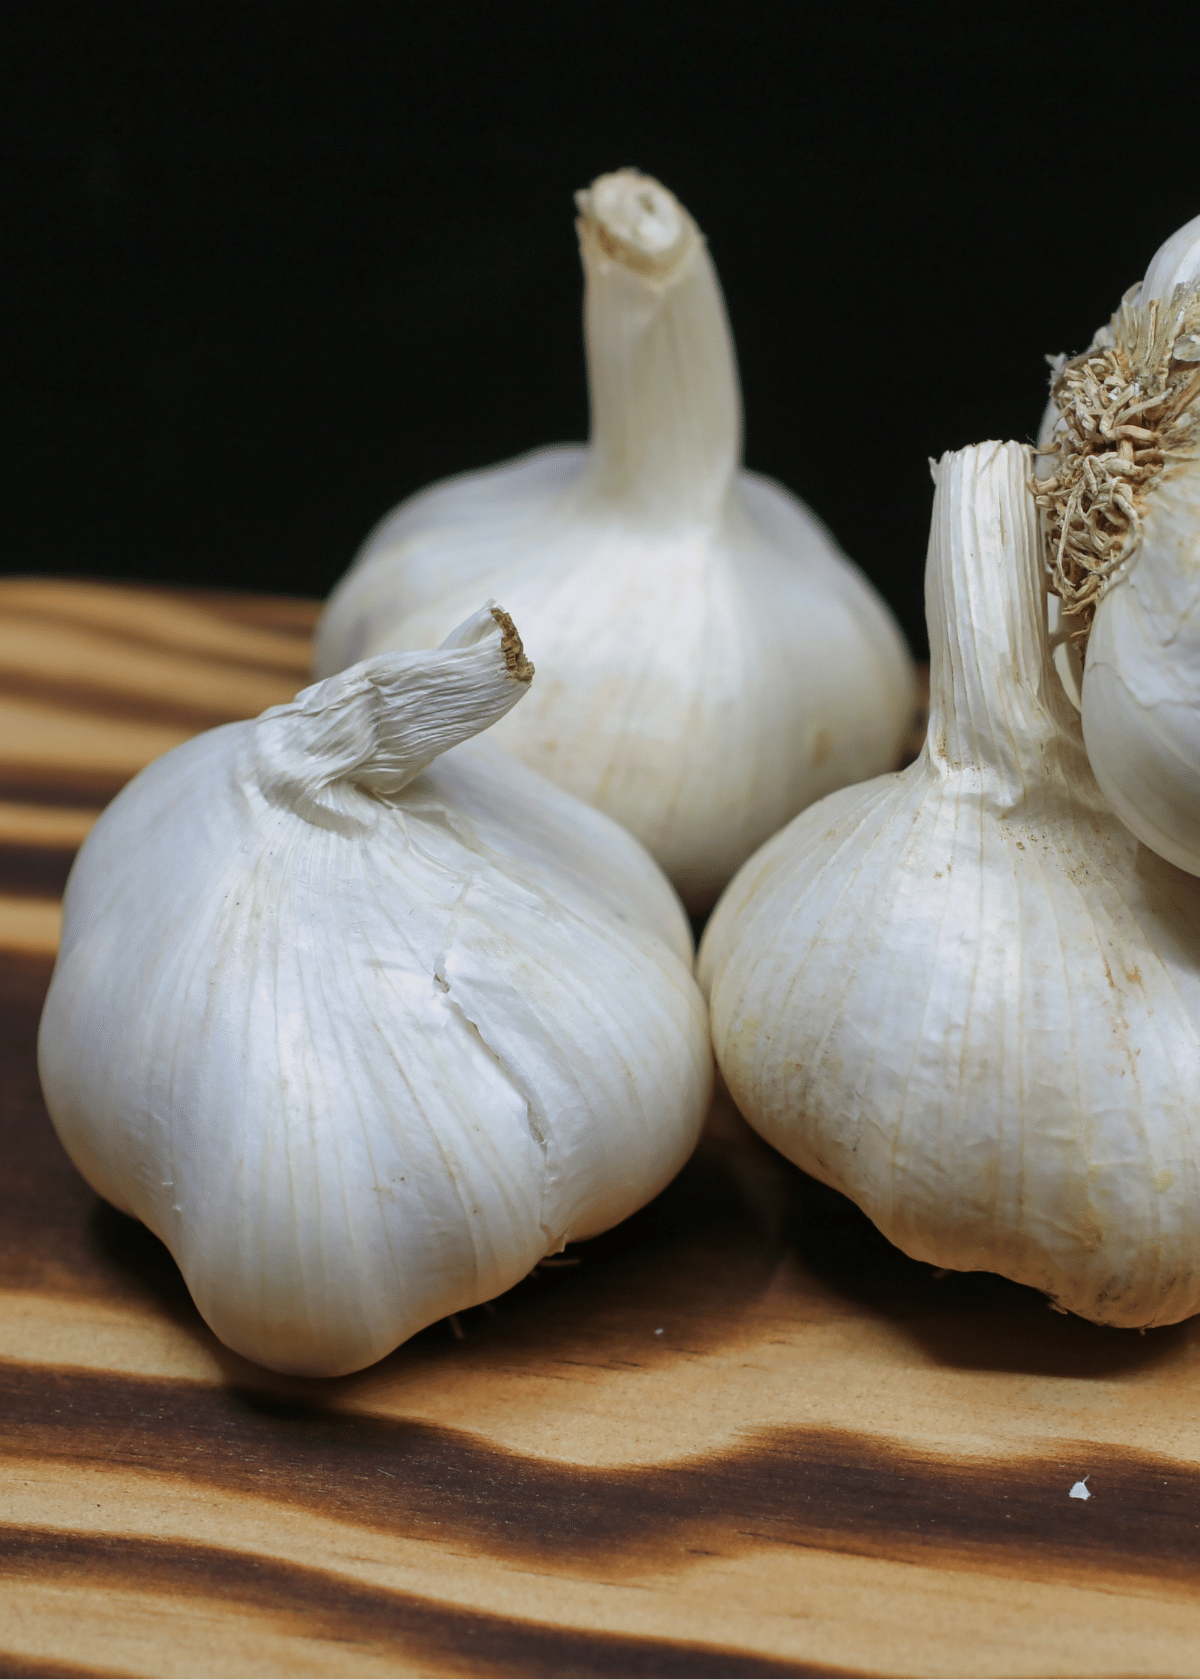 Best Garlic Supplement